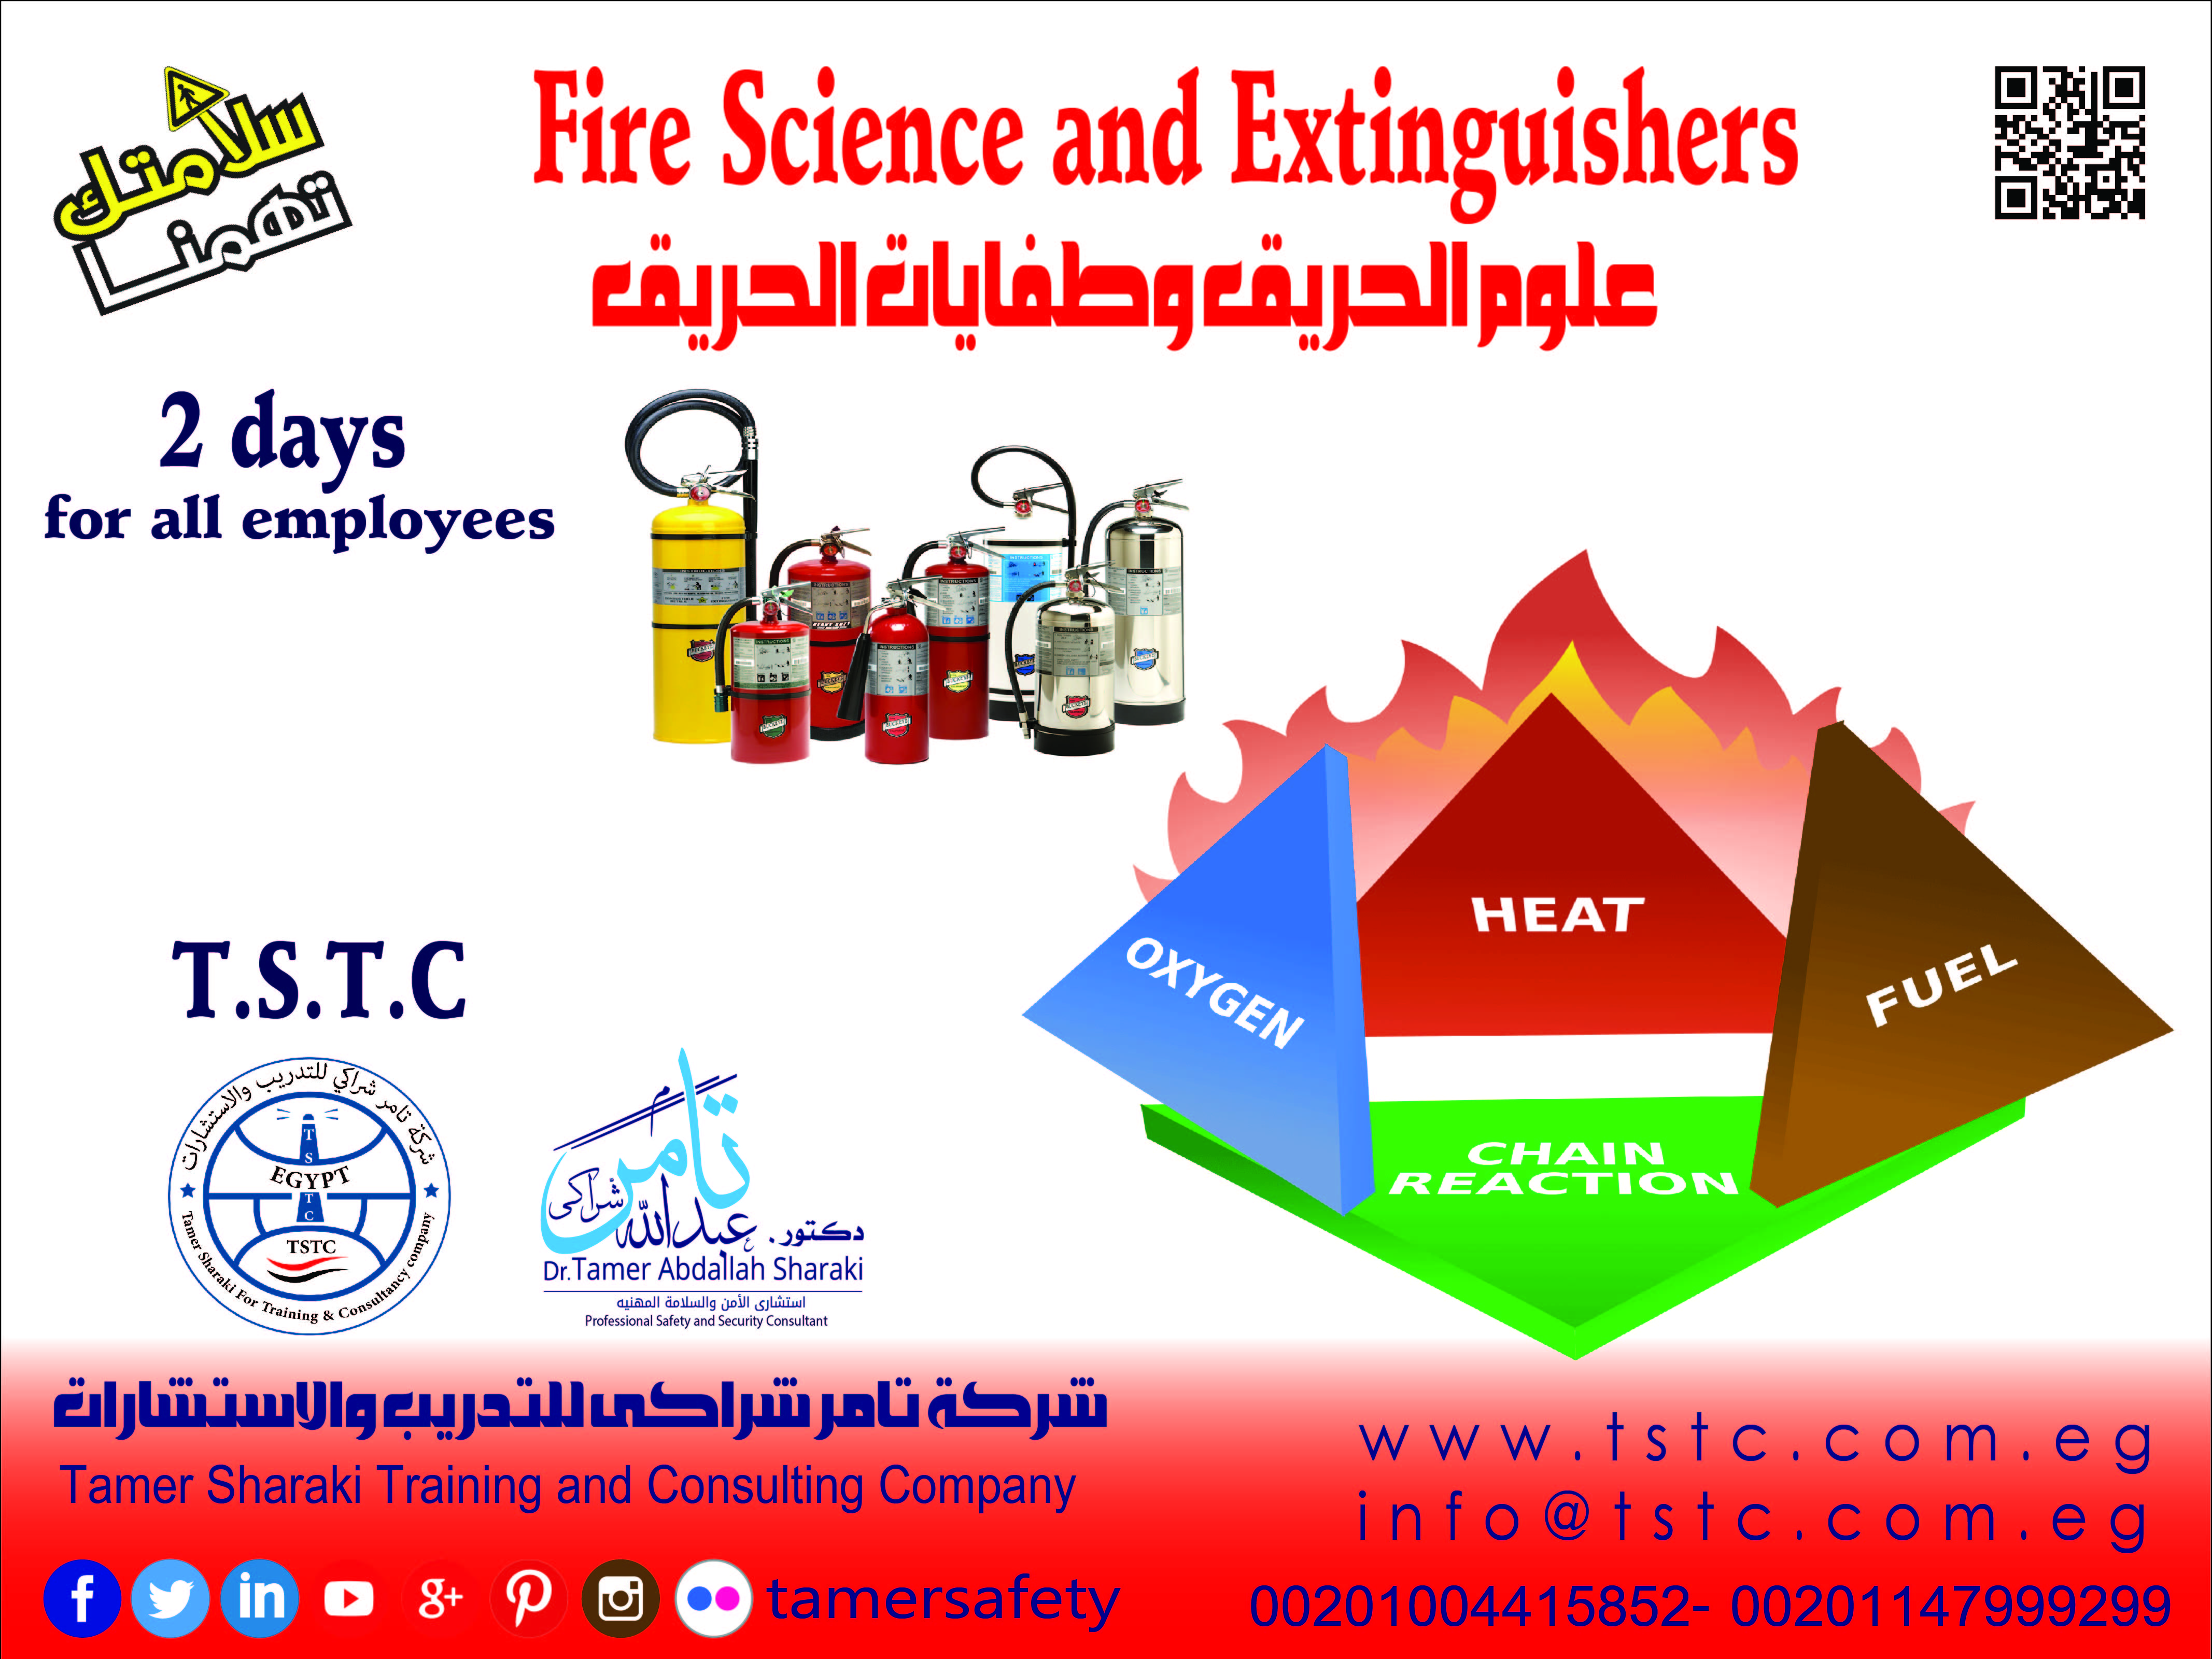 علوم الحريق وطفايات الحريق Fire Science and Extinguishers